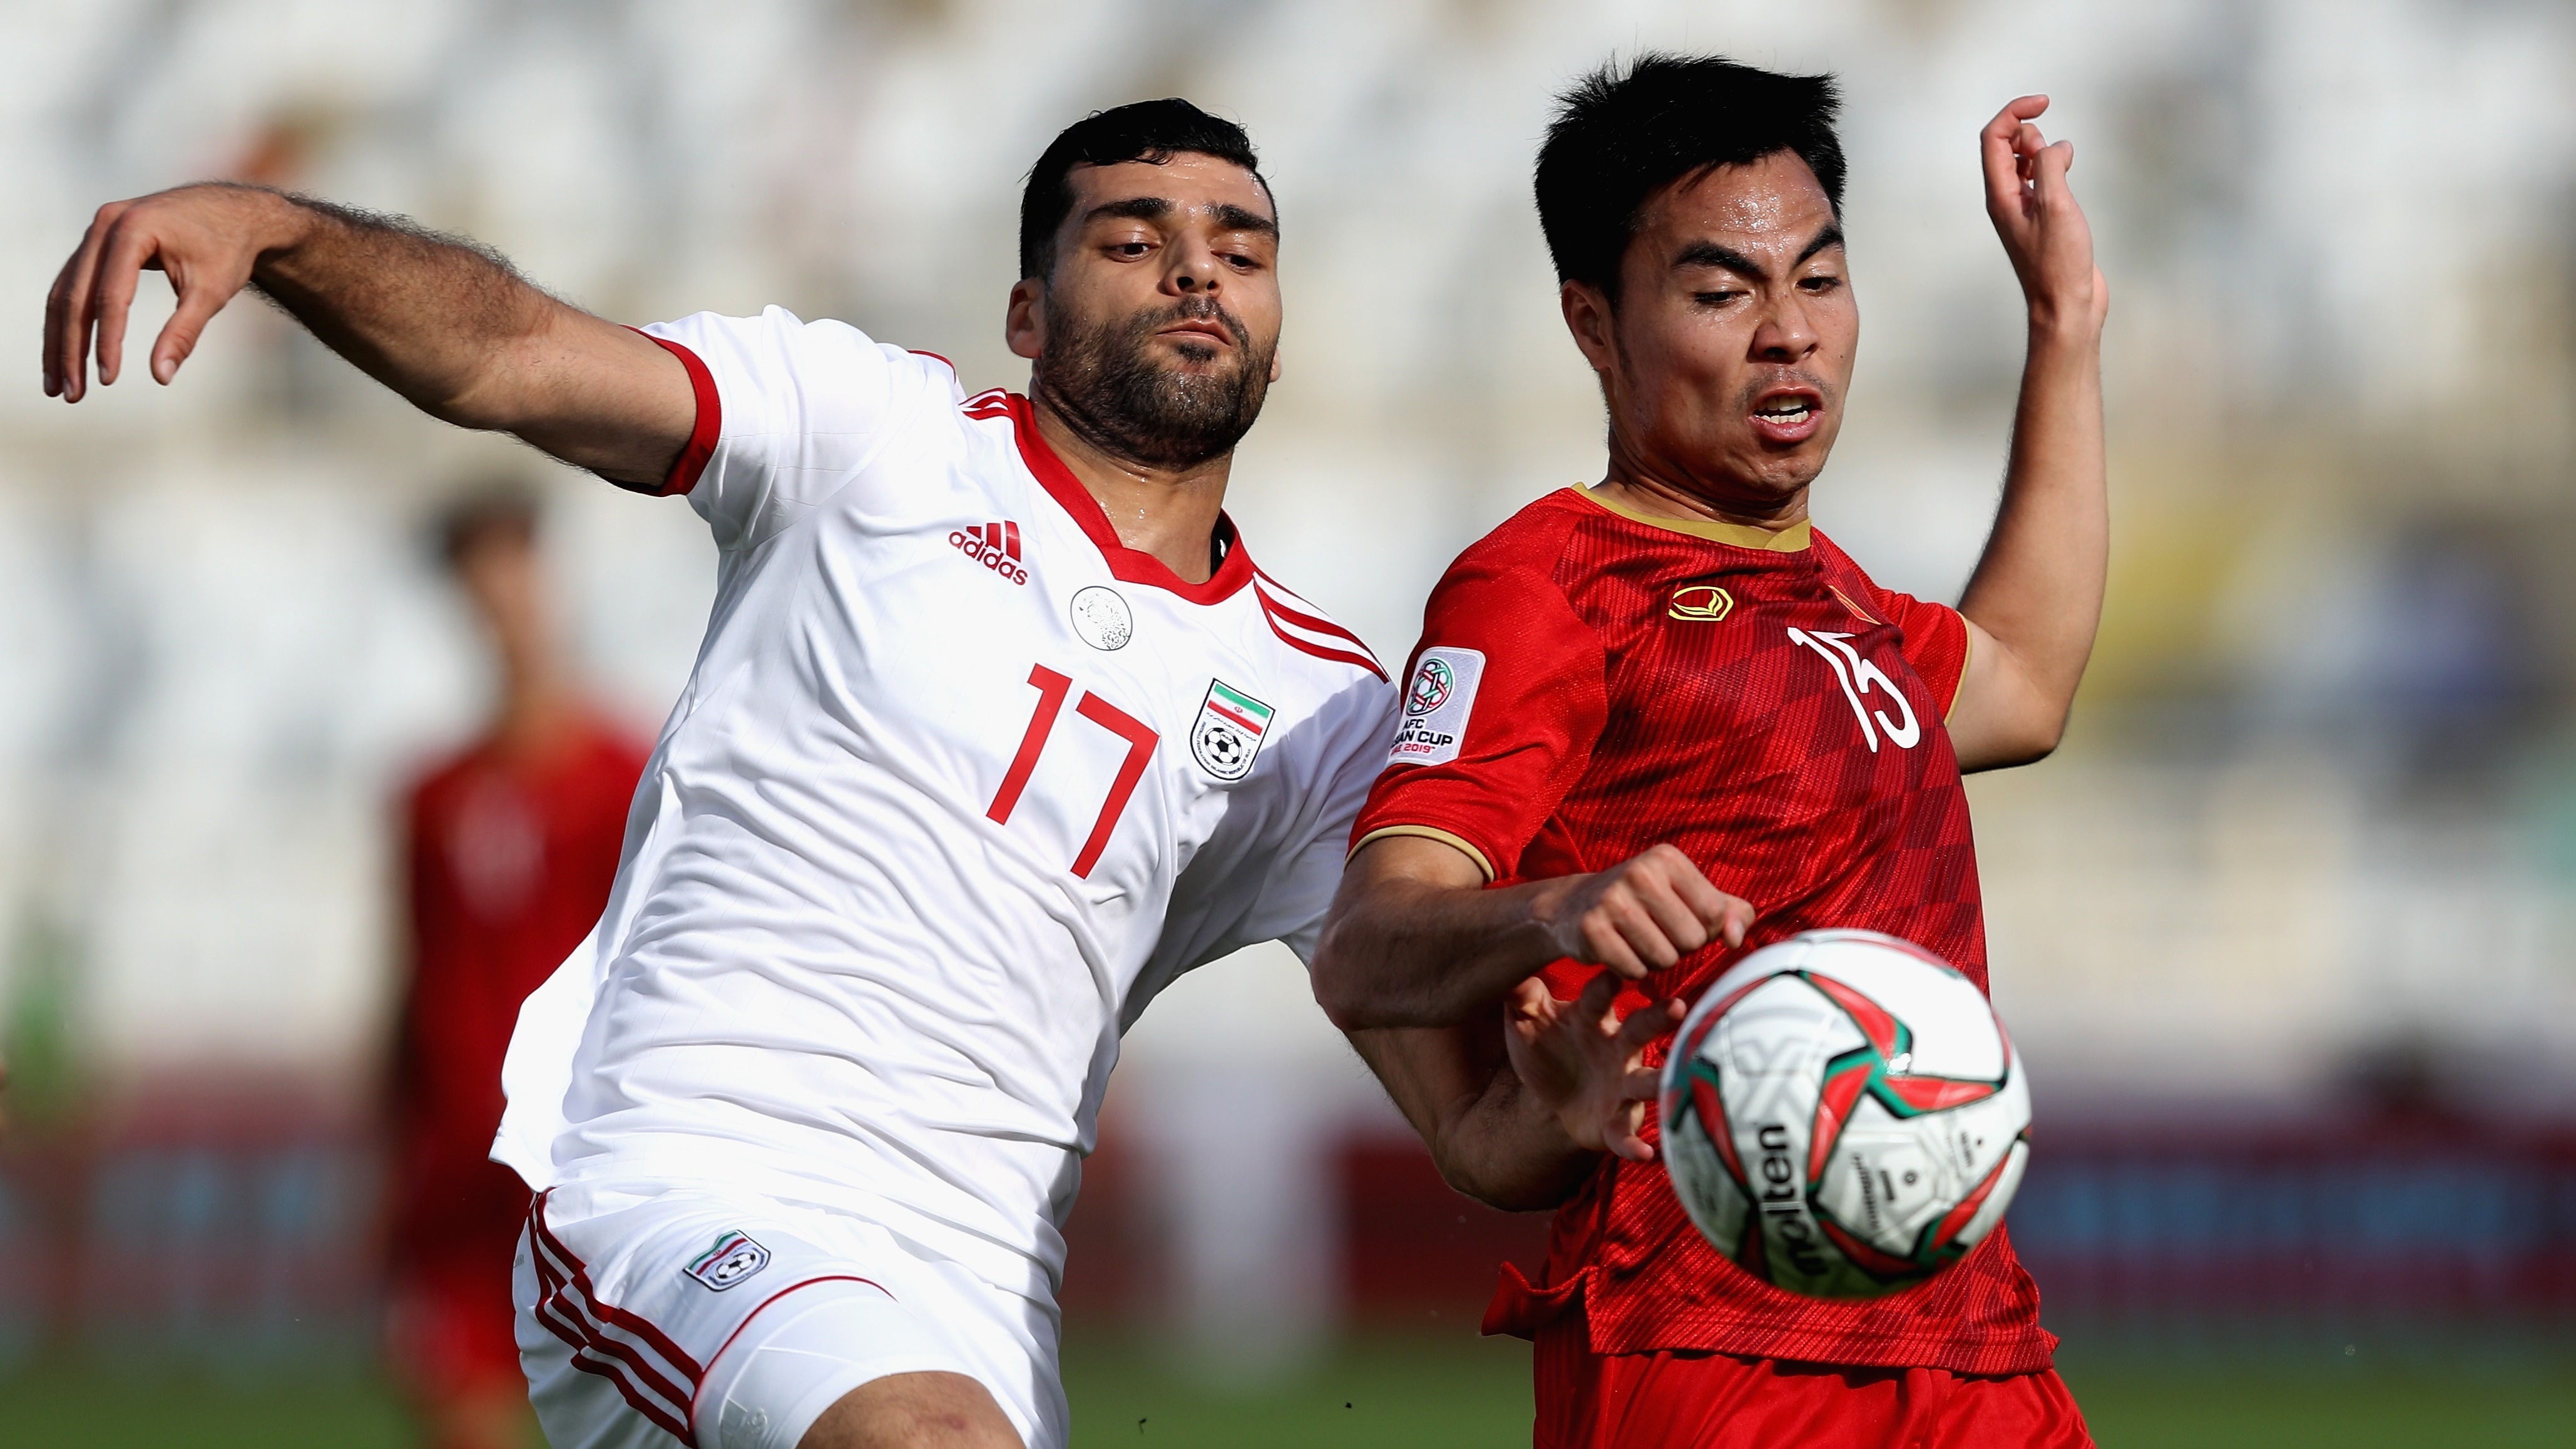 vietnam-vs-iran-asian-cup-2019_14dqe1w6n6o8m1cxt3drjkqjpc